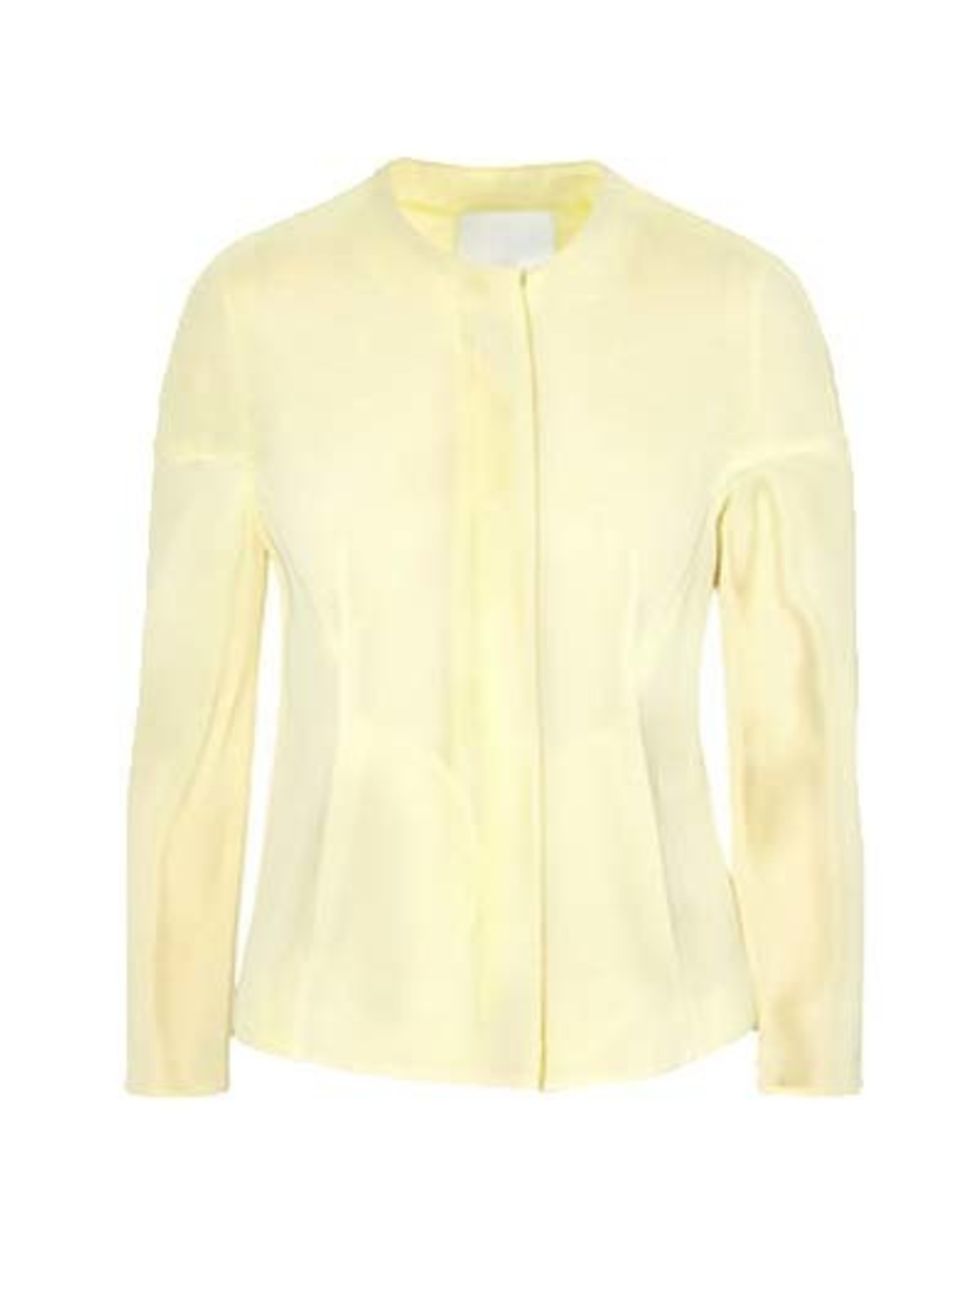 Product, Yellow, Brown, Sleeve, Collar, Textile, White, Fashion, Pattern, Khaki, 